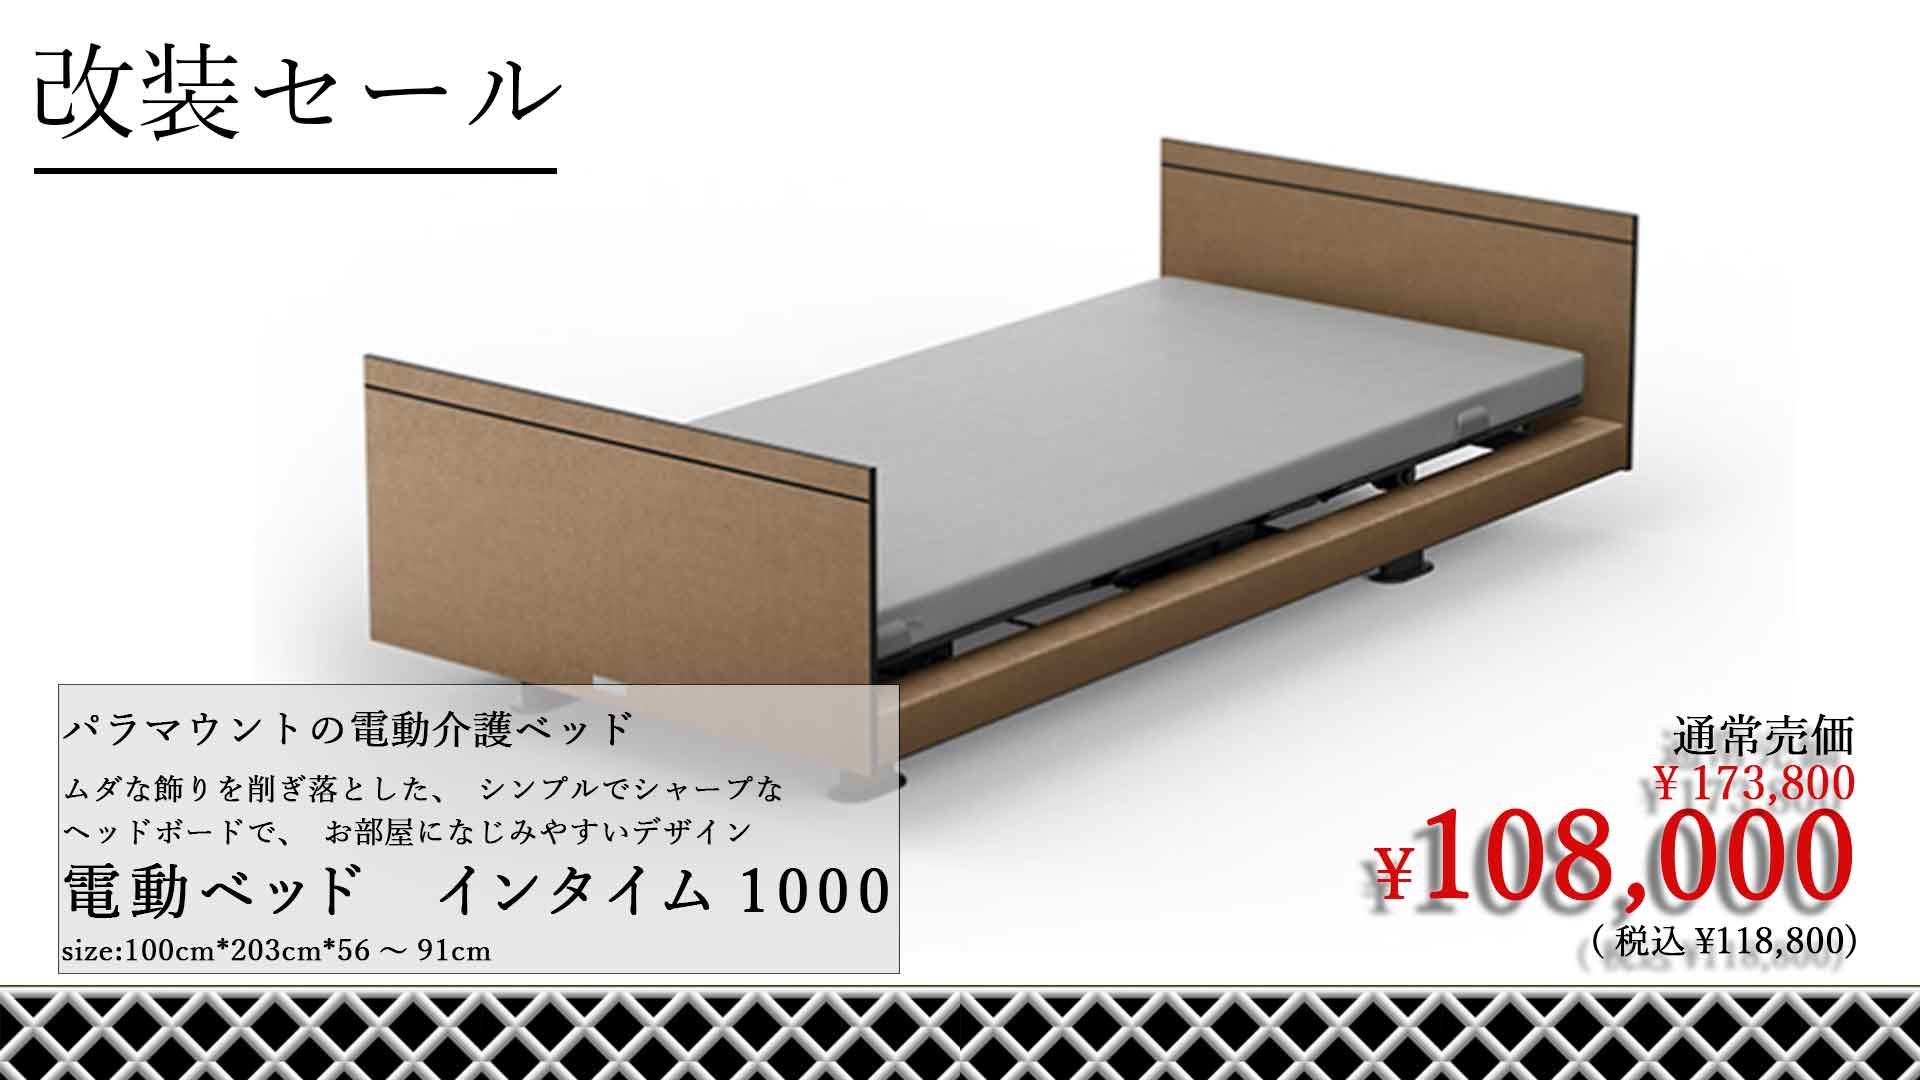 【完売】パラマウントベッドの電動介護ベッド インタイム1000が大 